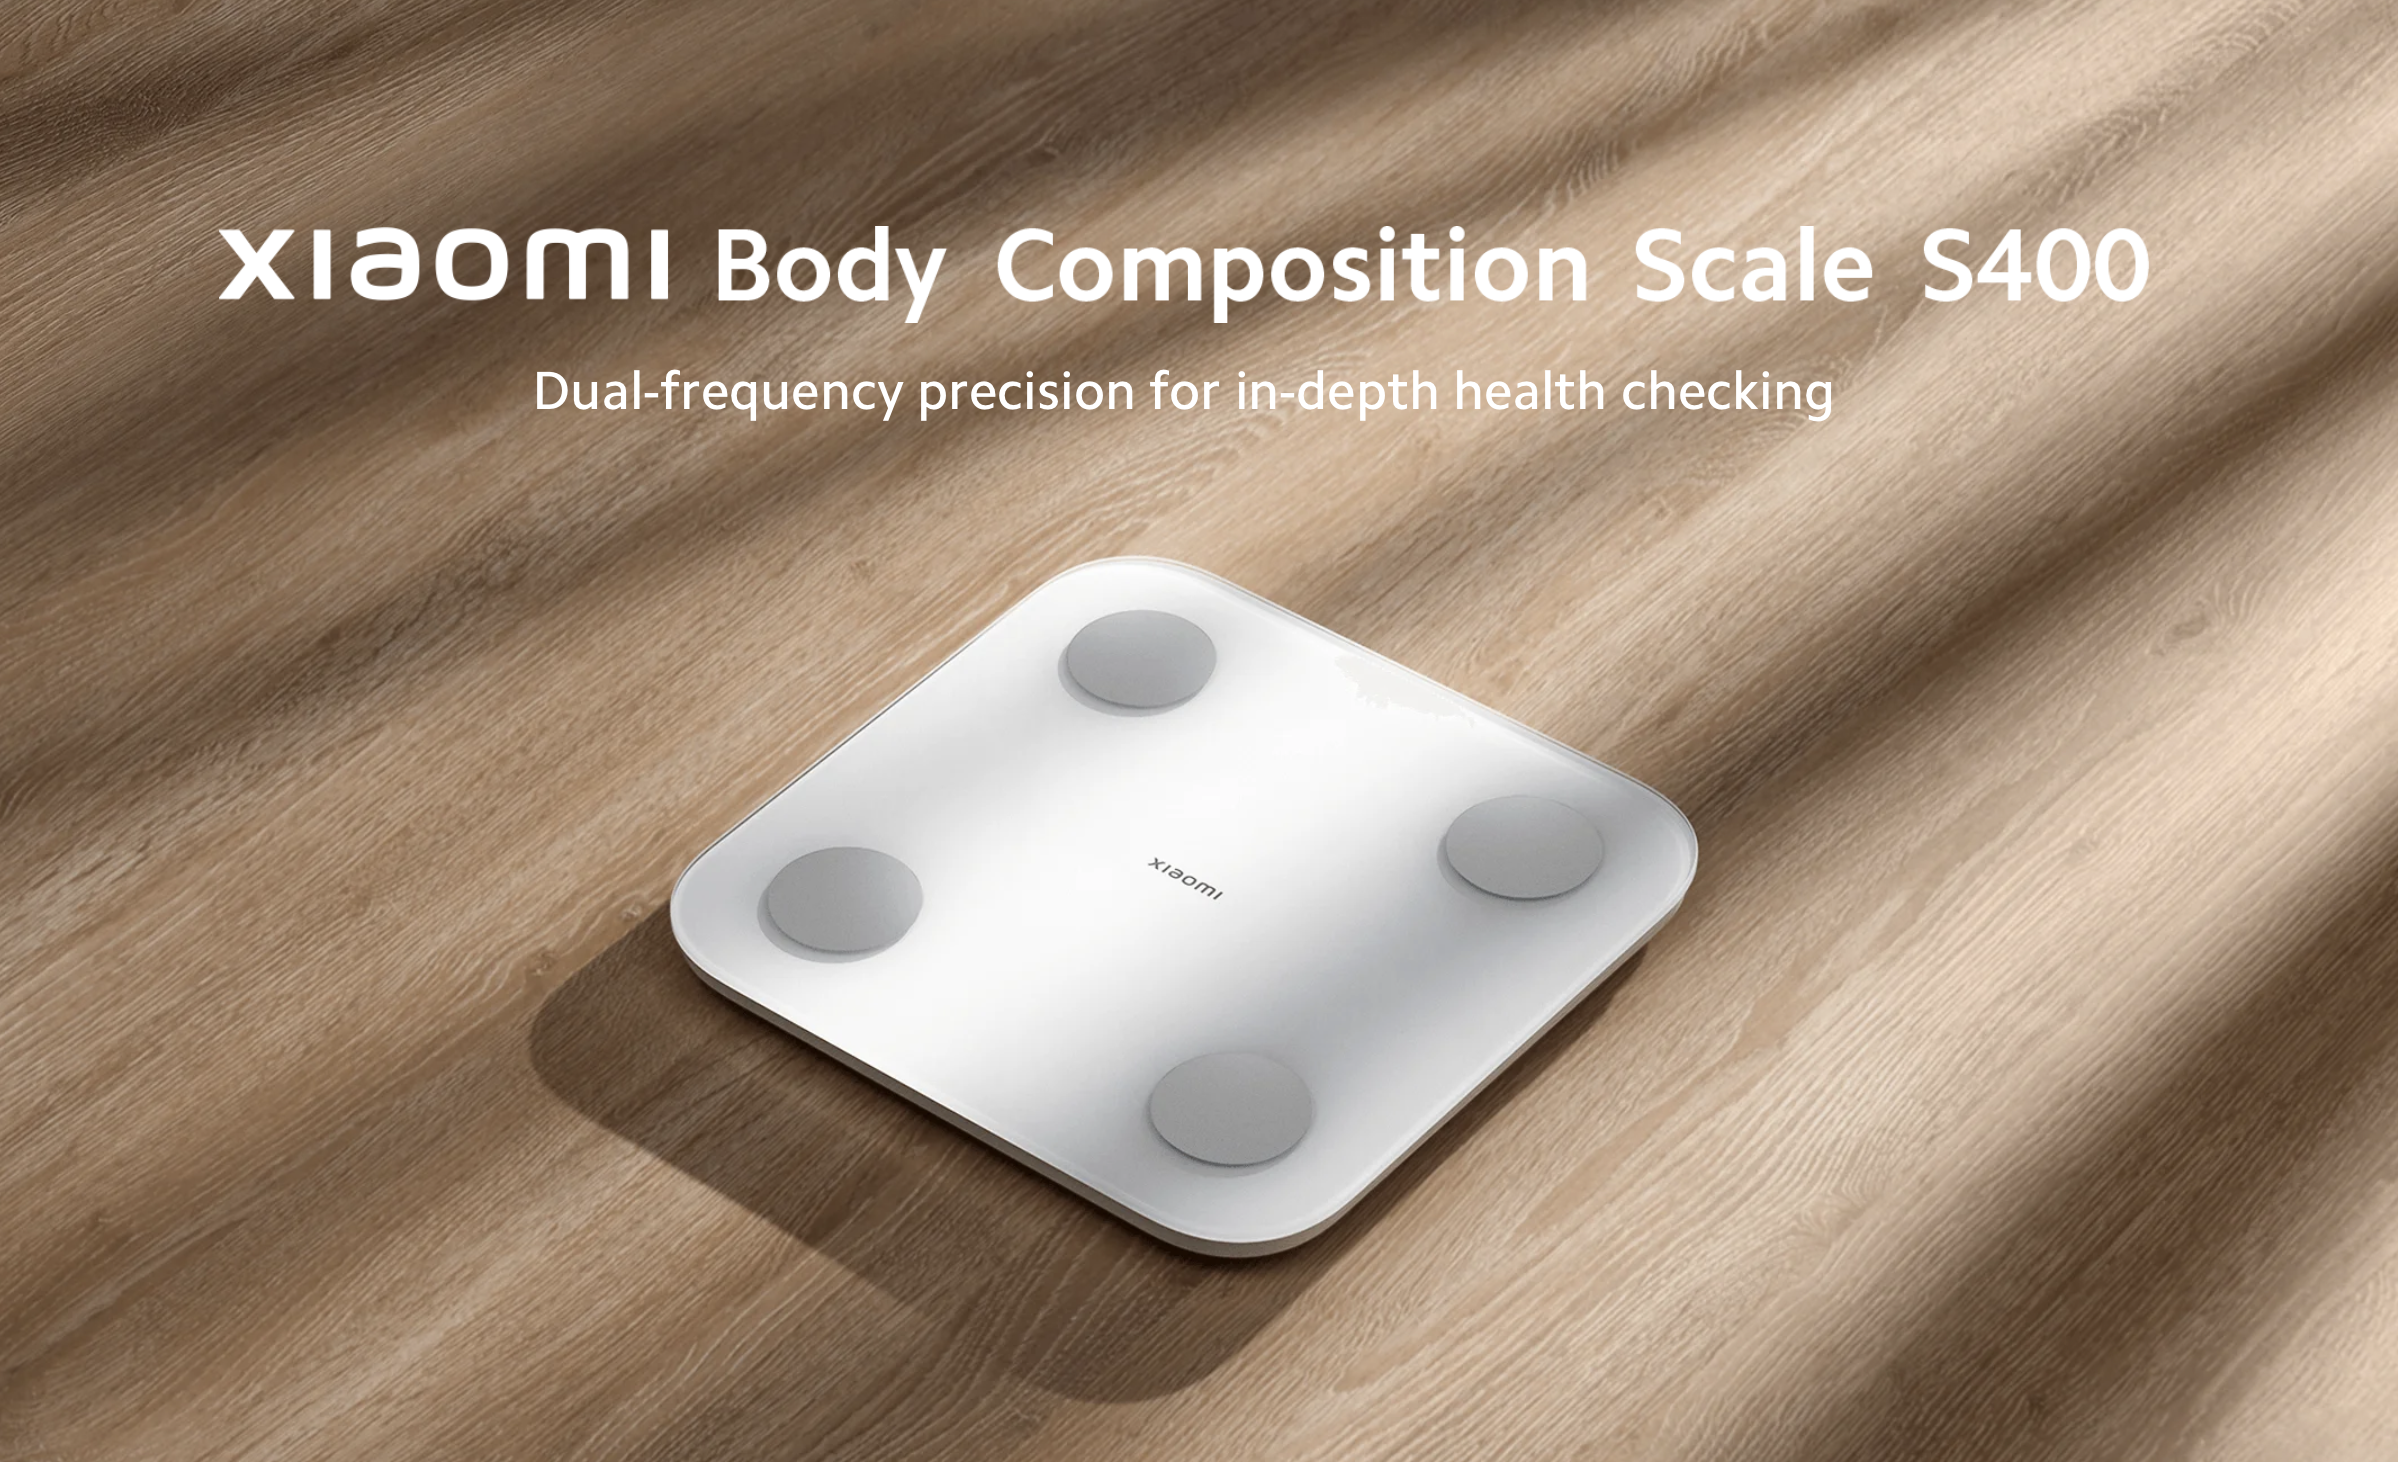 Xiaomi wprowadziło na globalny rynek Body Composition Scale S400, która może mierzyć 25 wskaźników zdrowotnych